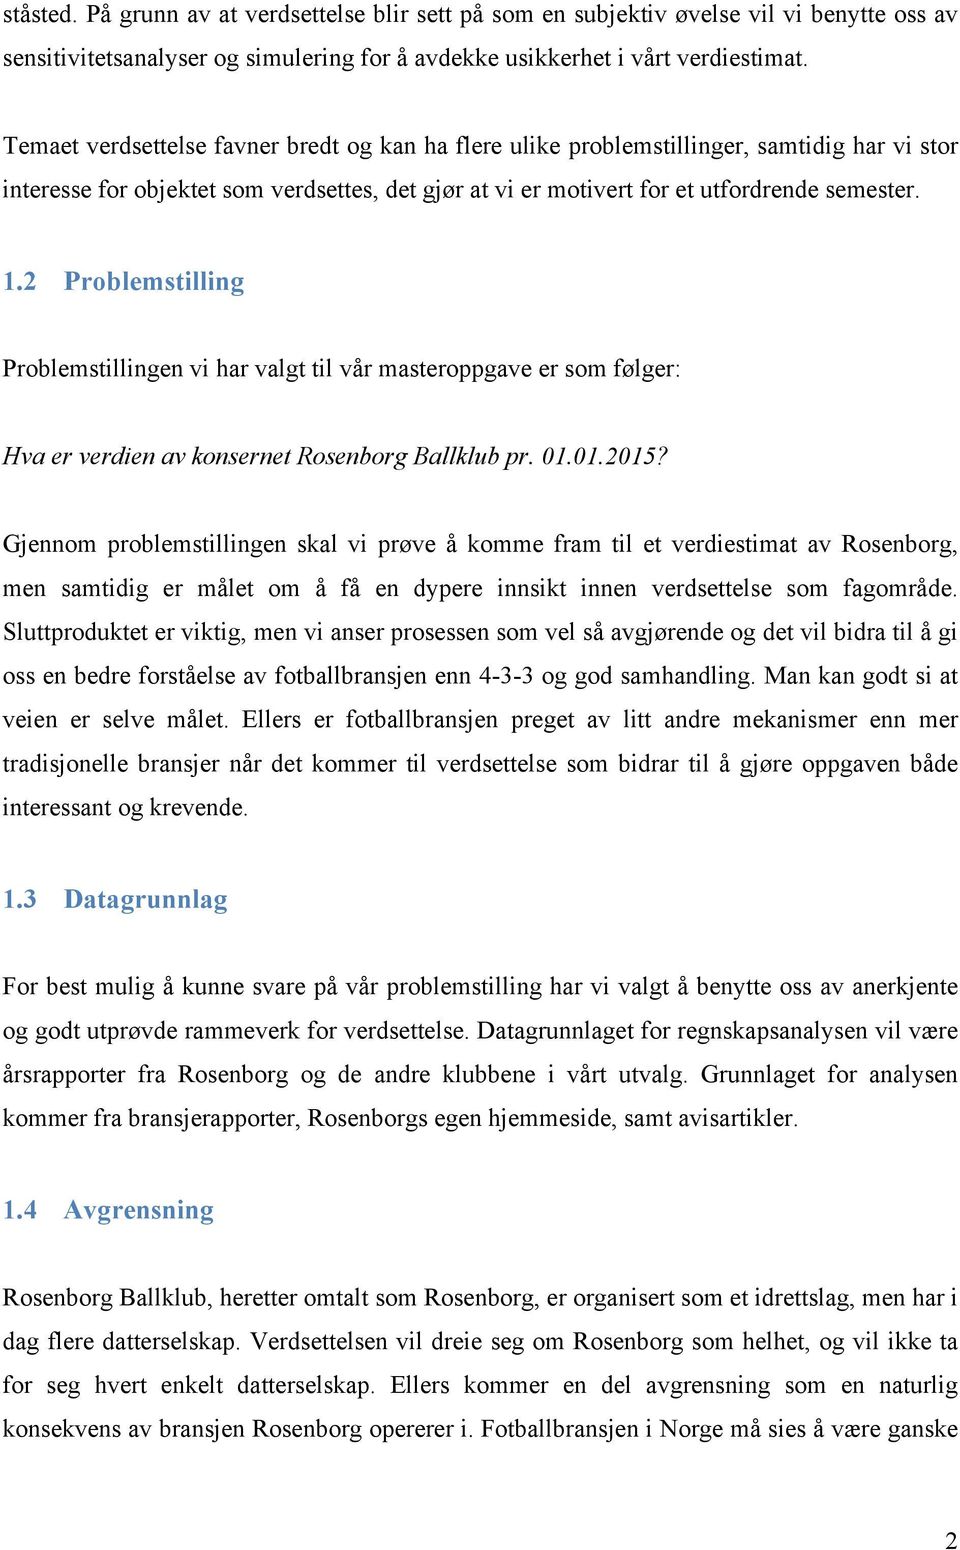 2 Problemstilling Problemstillingen vi har valgt til vår masteroppgave er som følger: Hva er verdien av konsernet Rosenborg Ballklub pr. 01.01.2015?